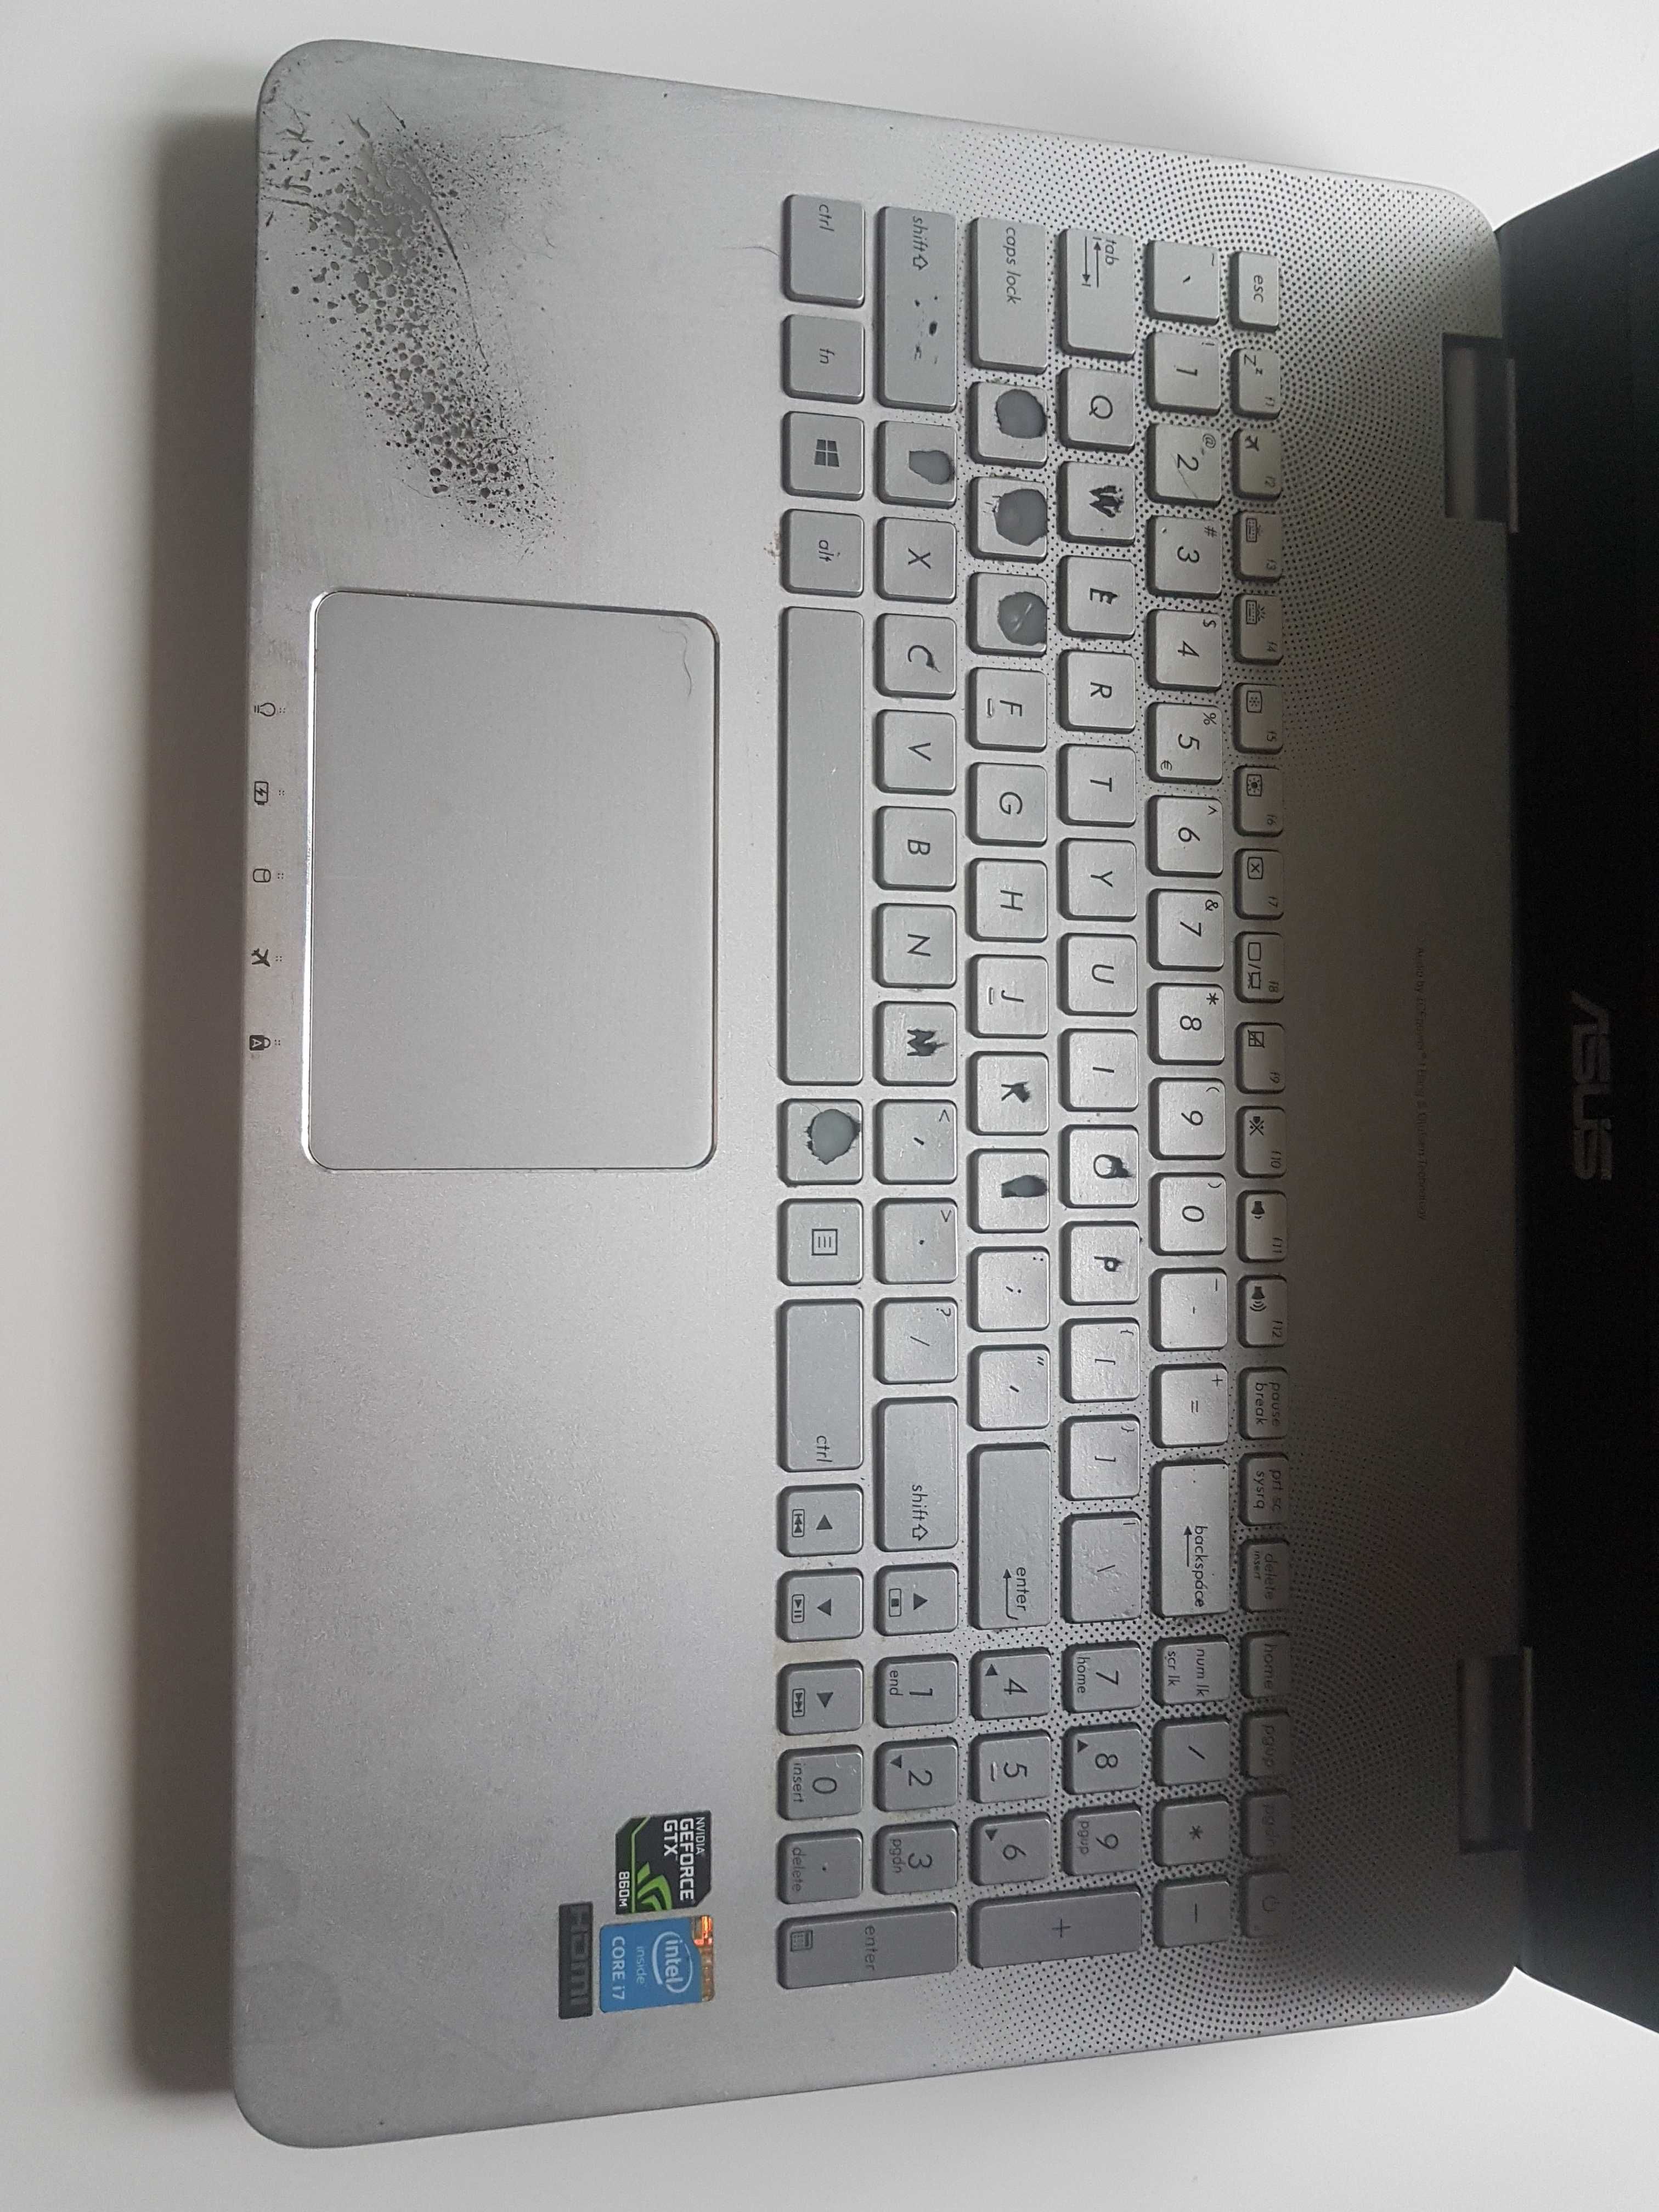 Laptop Asus N551j